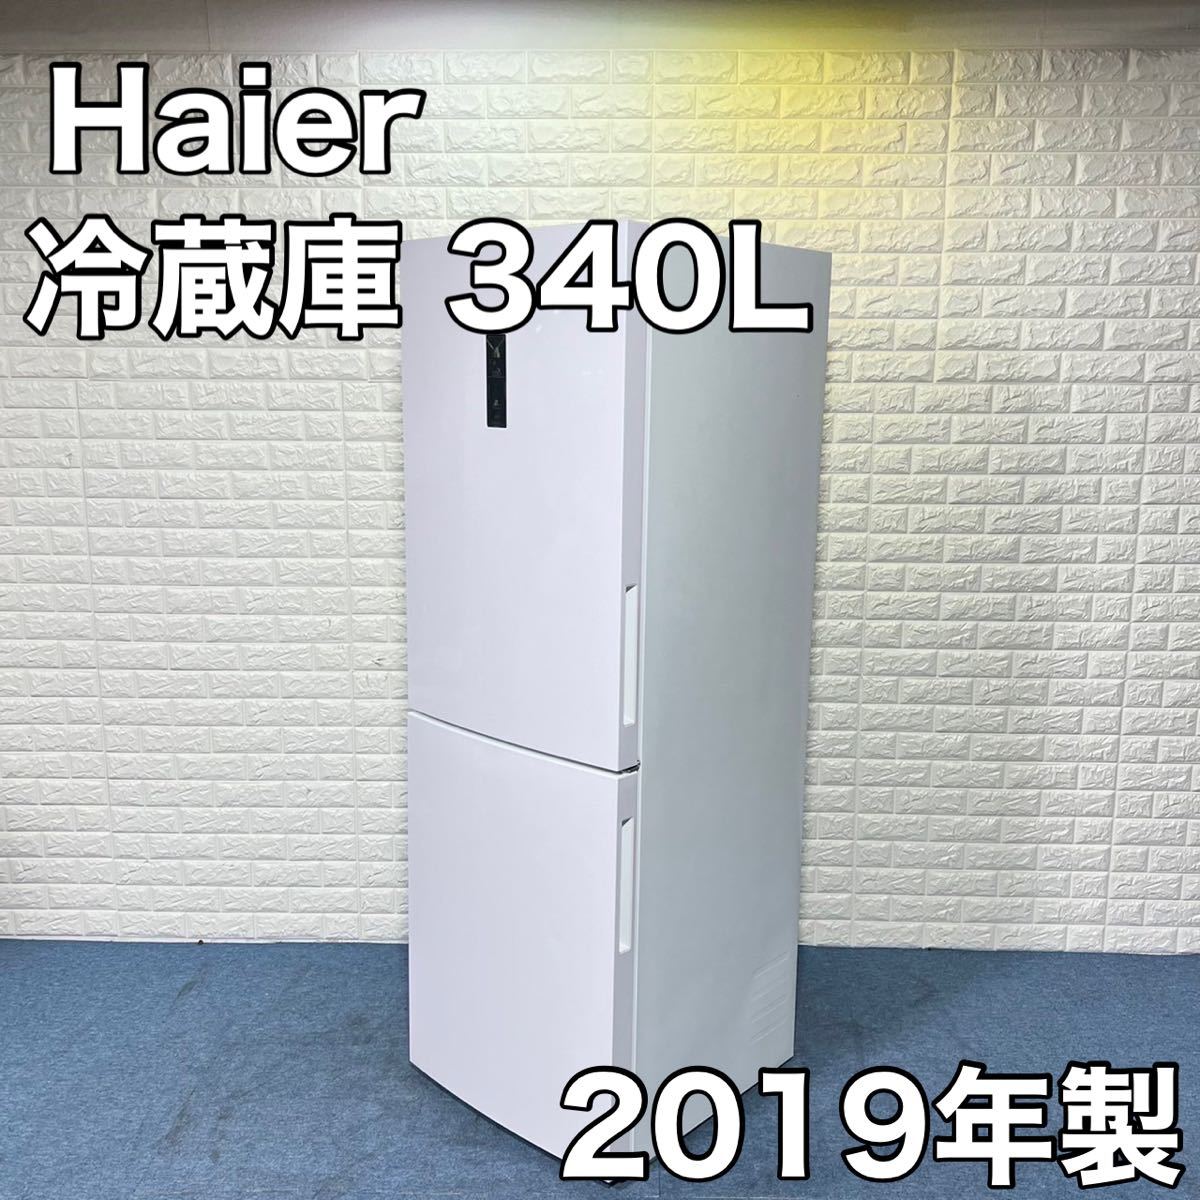 Haier ハイアール 冷蔵庫 JR-NF340A 340L 2019年製 2ドア 家電